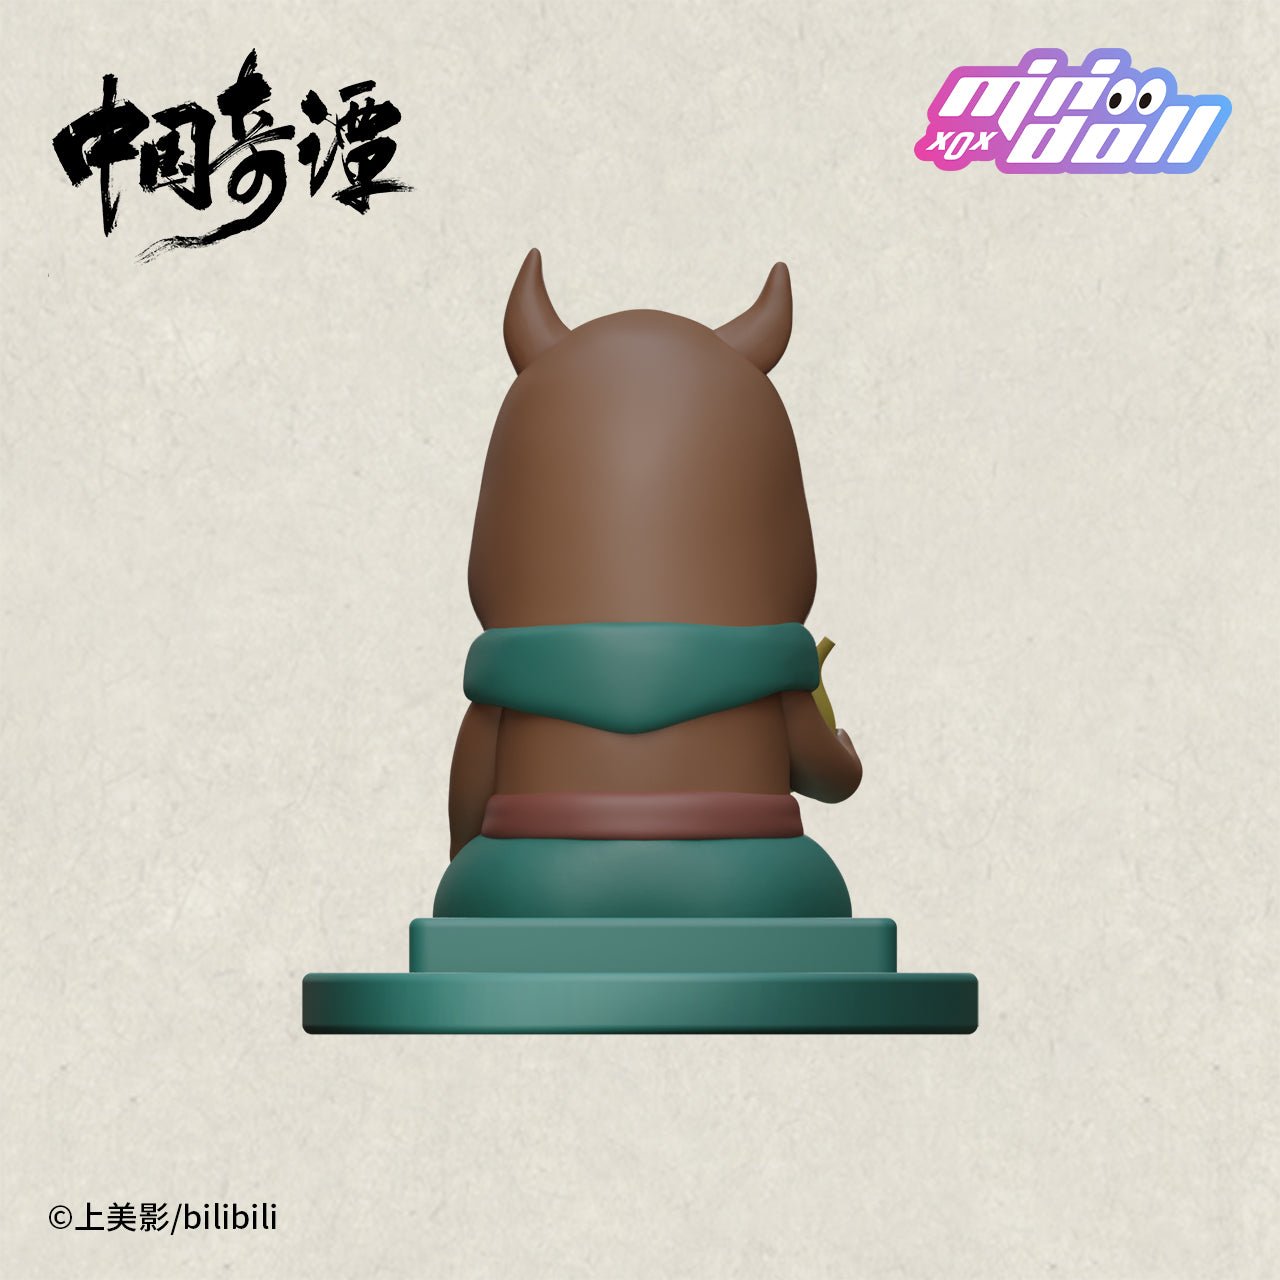 Chinese Folktales Nobody Piglet Demon Mobile Phone Holder 11684:399927